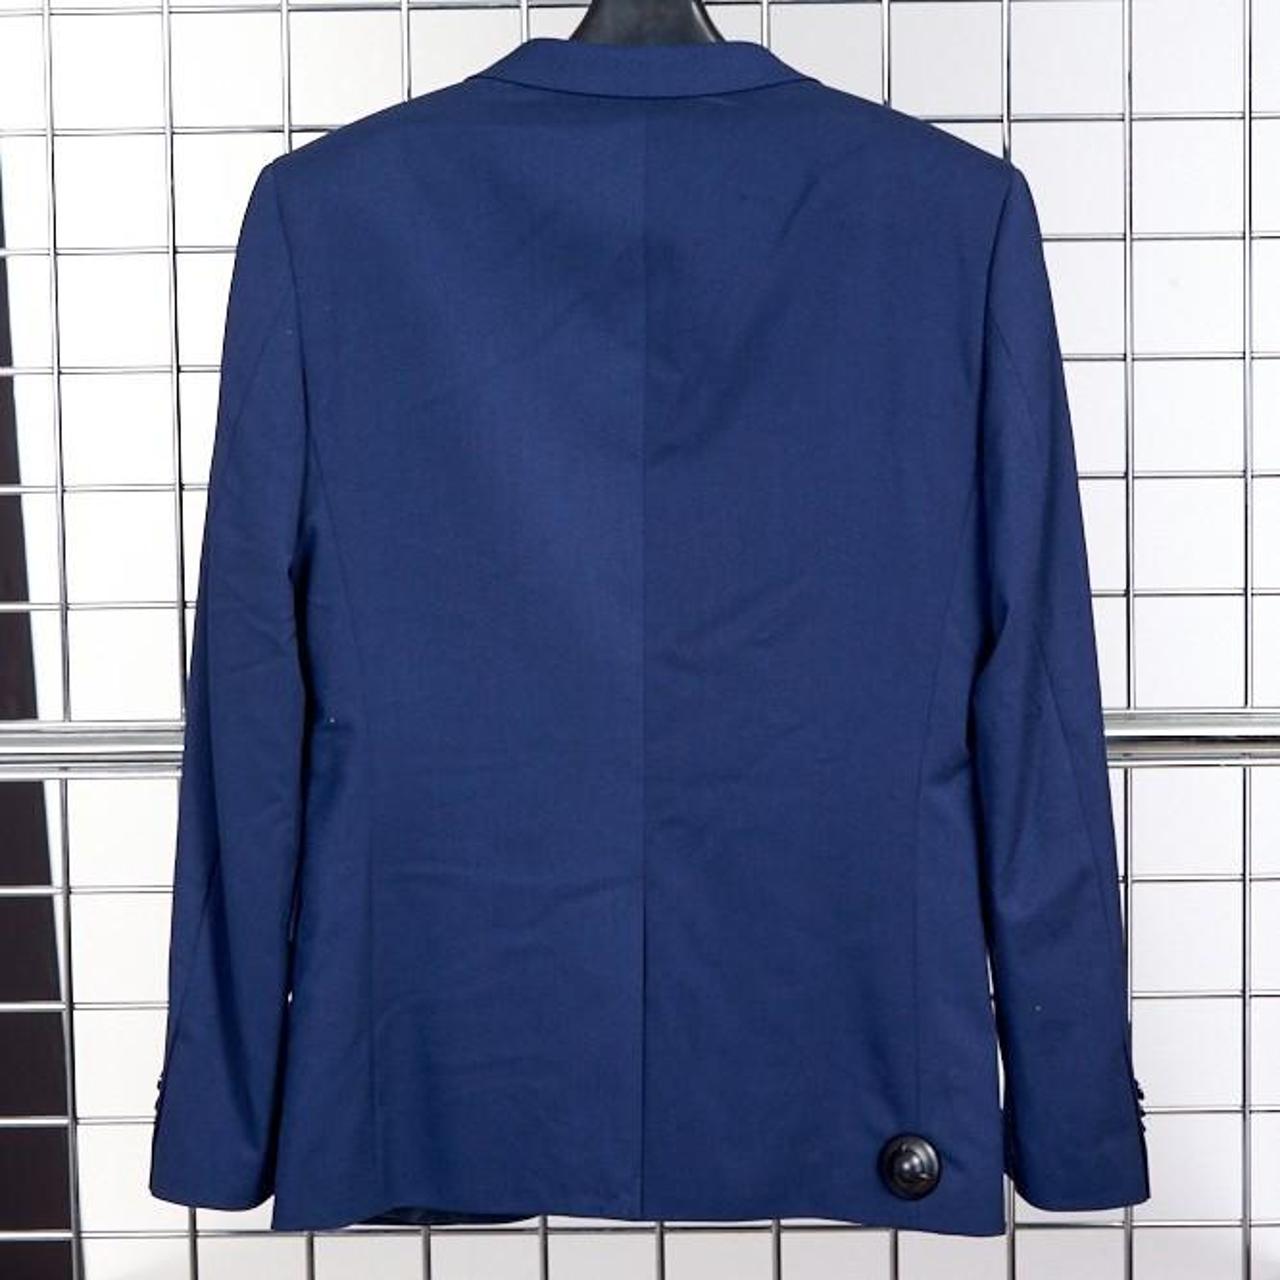 H&M Men's Blue Jacket | Depop